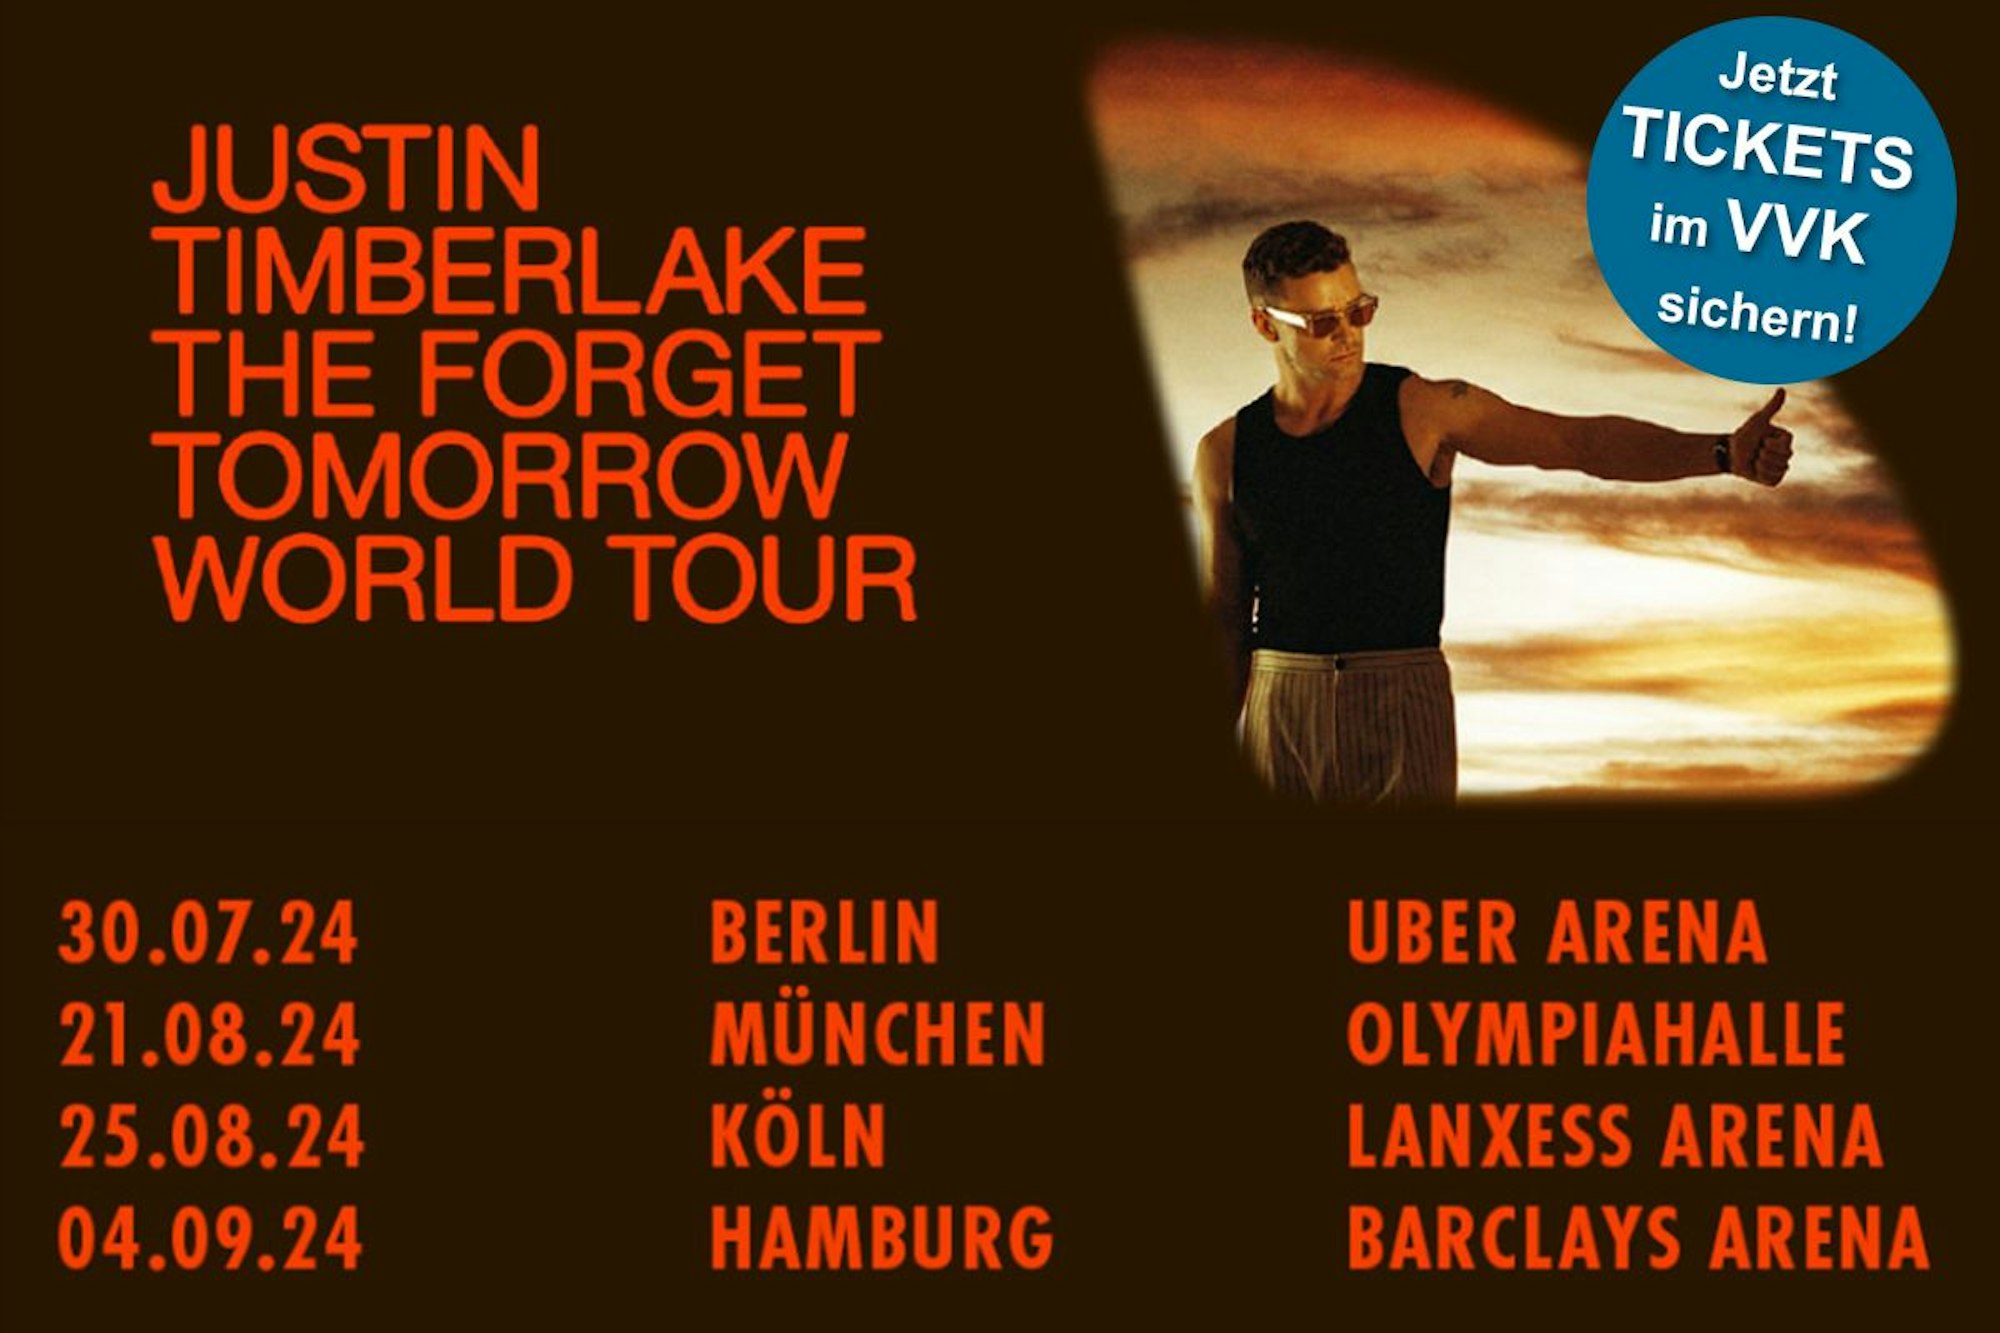 Justin Timberlake kommt mit seiner The Forget Tomorrow World Tour 2024 auch nach Deutschland. Jetzt Tickets sichern!